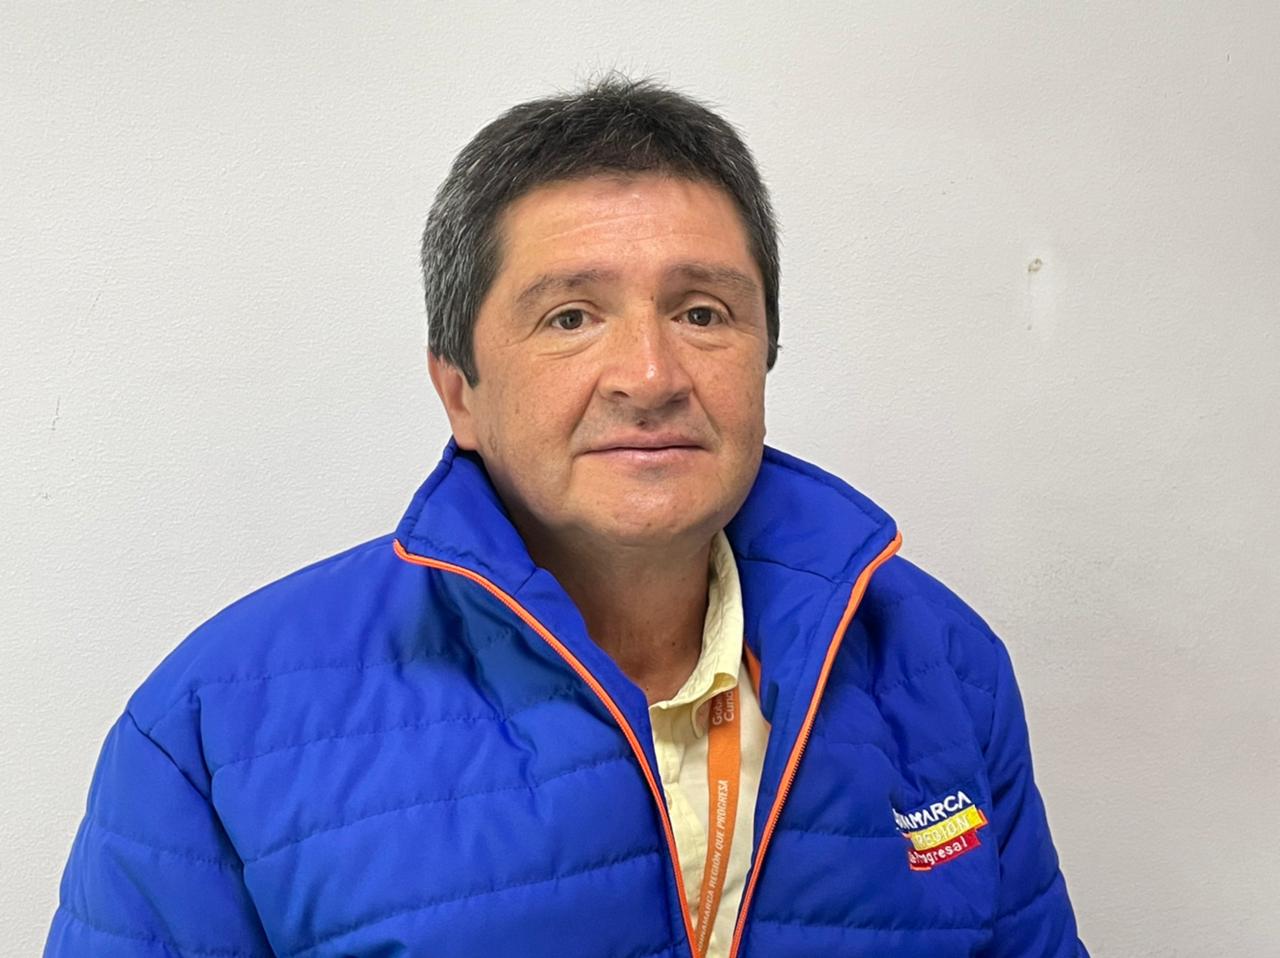 Juan Carlos Ramos Flores